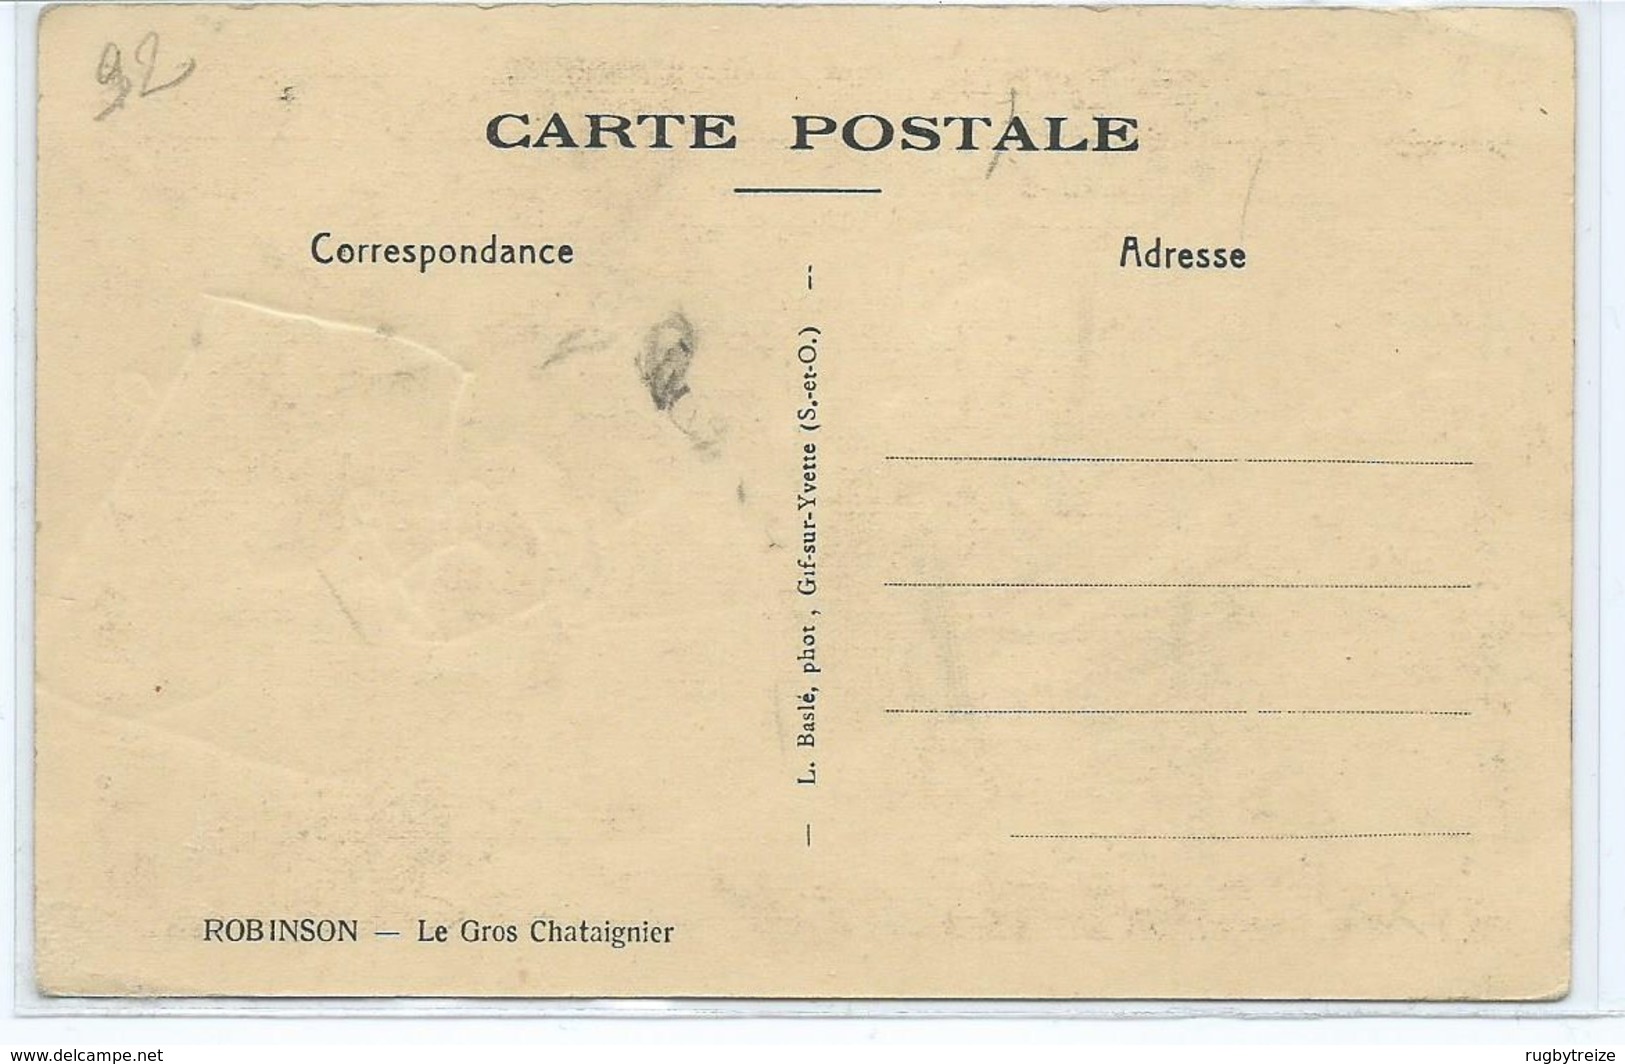 2800 Lot De 50 CPA - Toute La France: Perros Guirec Ris Orangis Besançon Benoite Vaux Etc.. Toutes Faces Scannées - 5 - 99 Postales